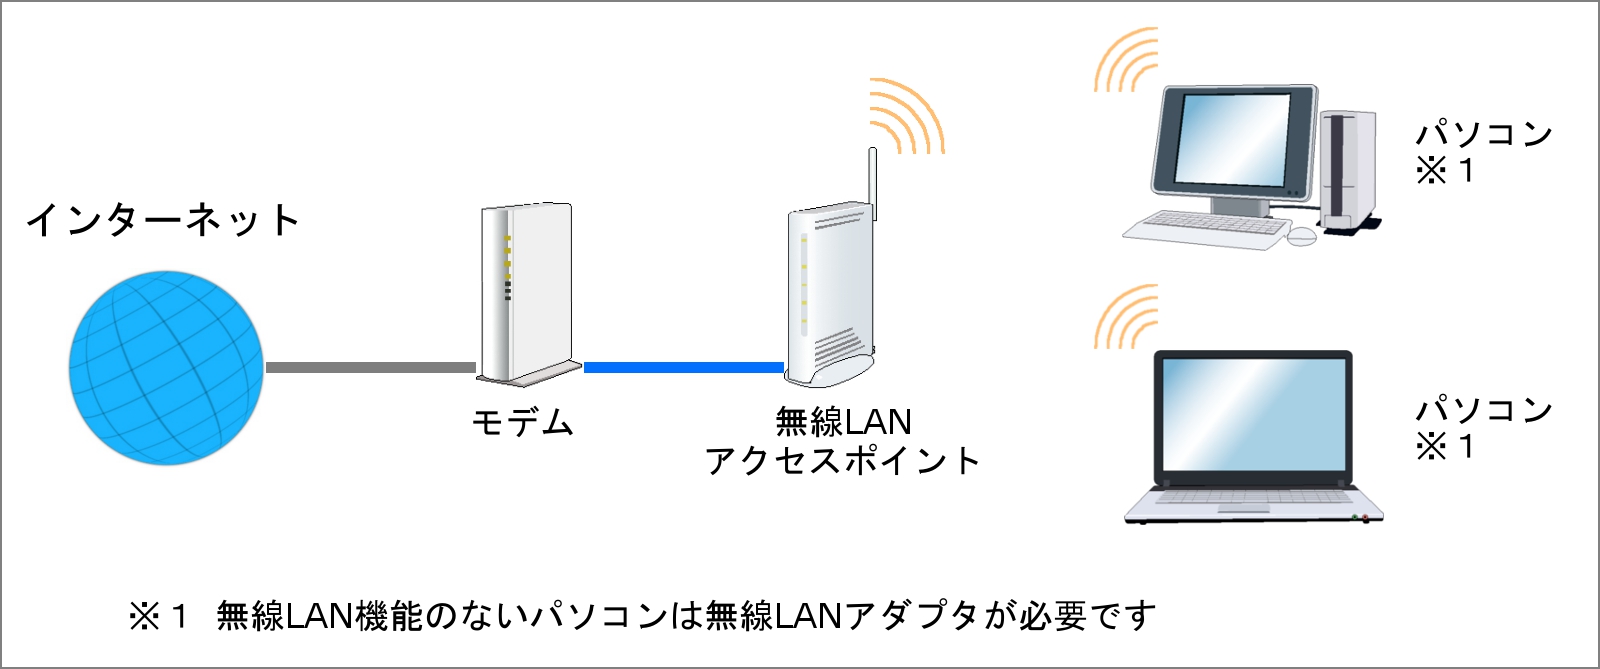 ルータ機能付きモデムを利用した無線LANの接続例